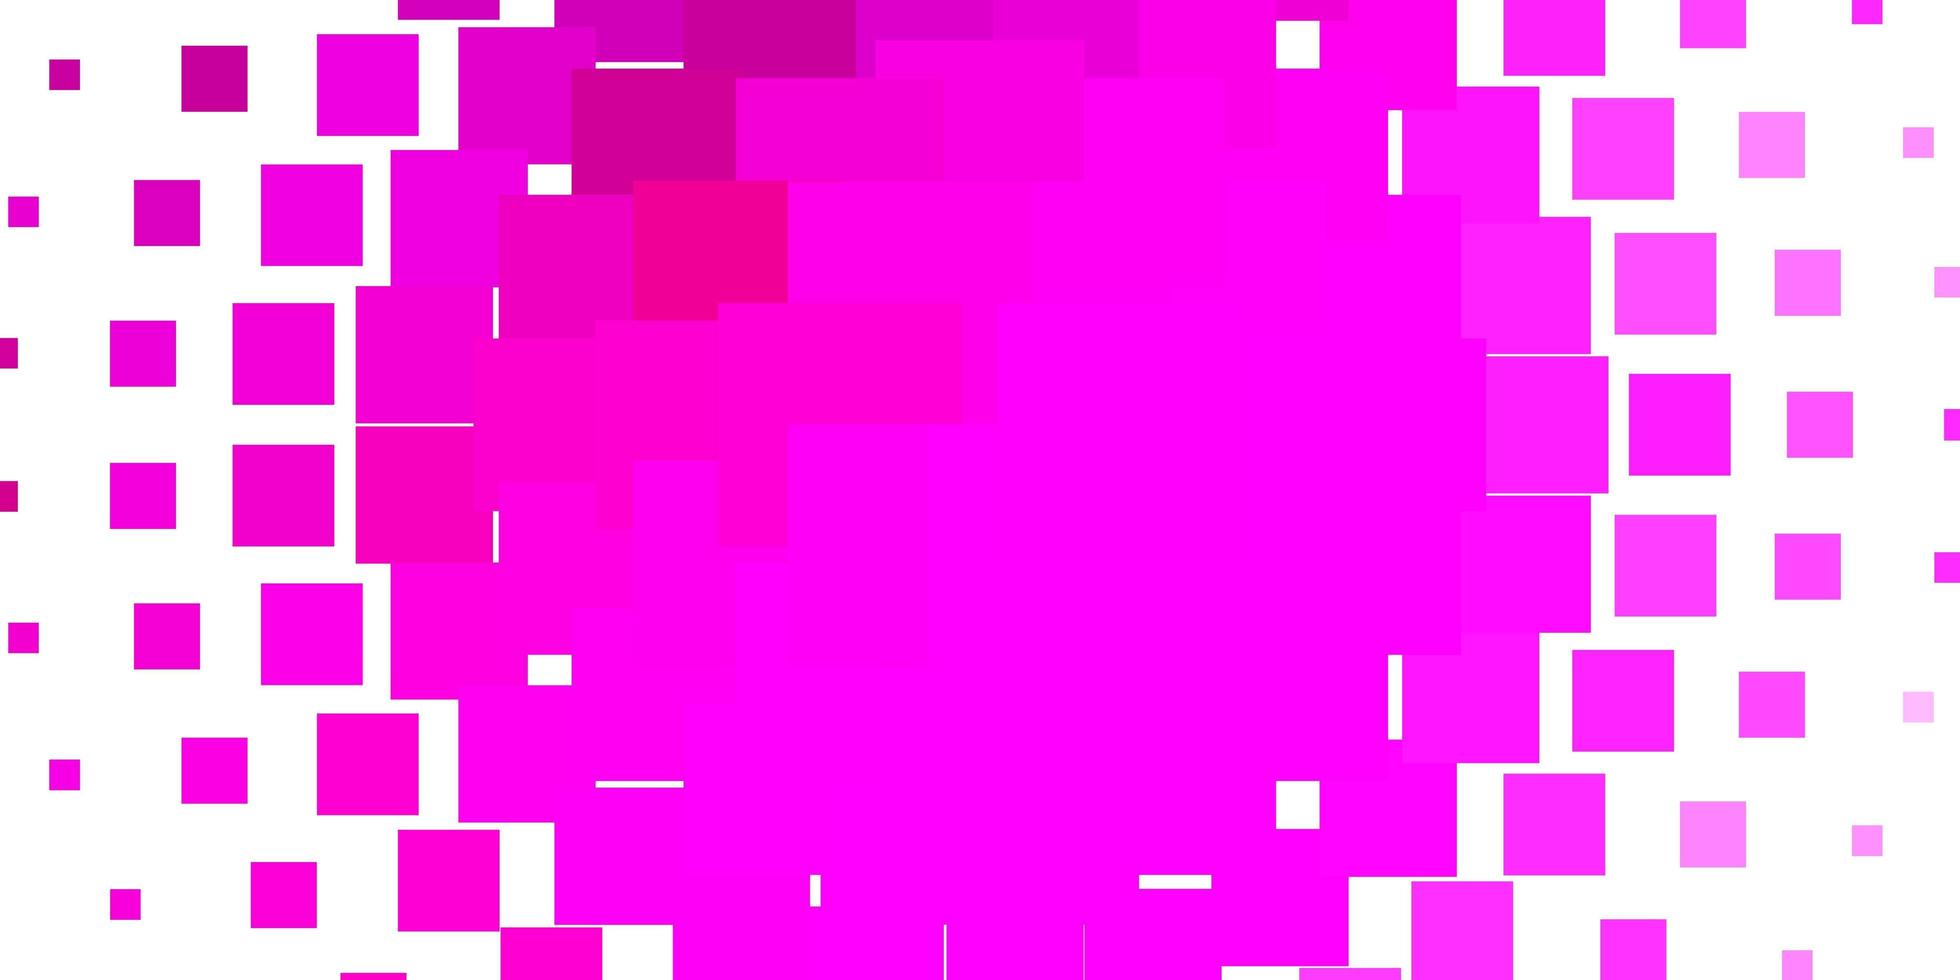 trama vettoriale rosa chiaro in stile rettangolare. illustrazione colorata con rettangoli sfumati e quadrati. modello per spot pubblicitari, annunci.